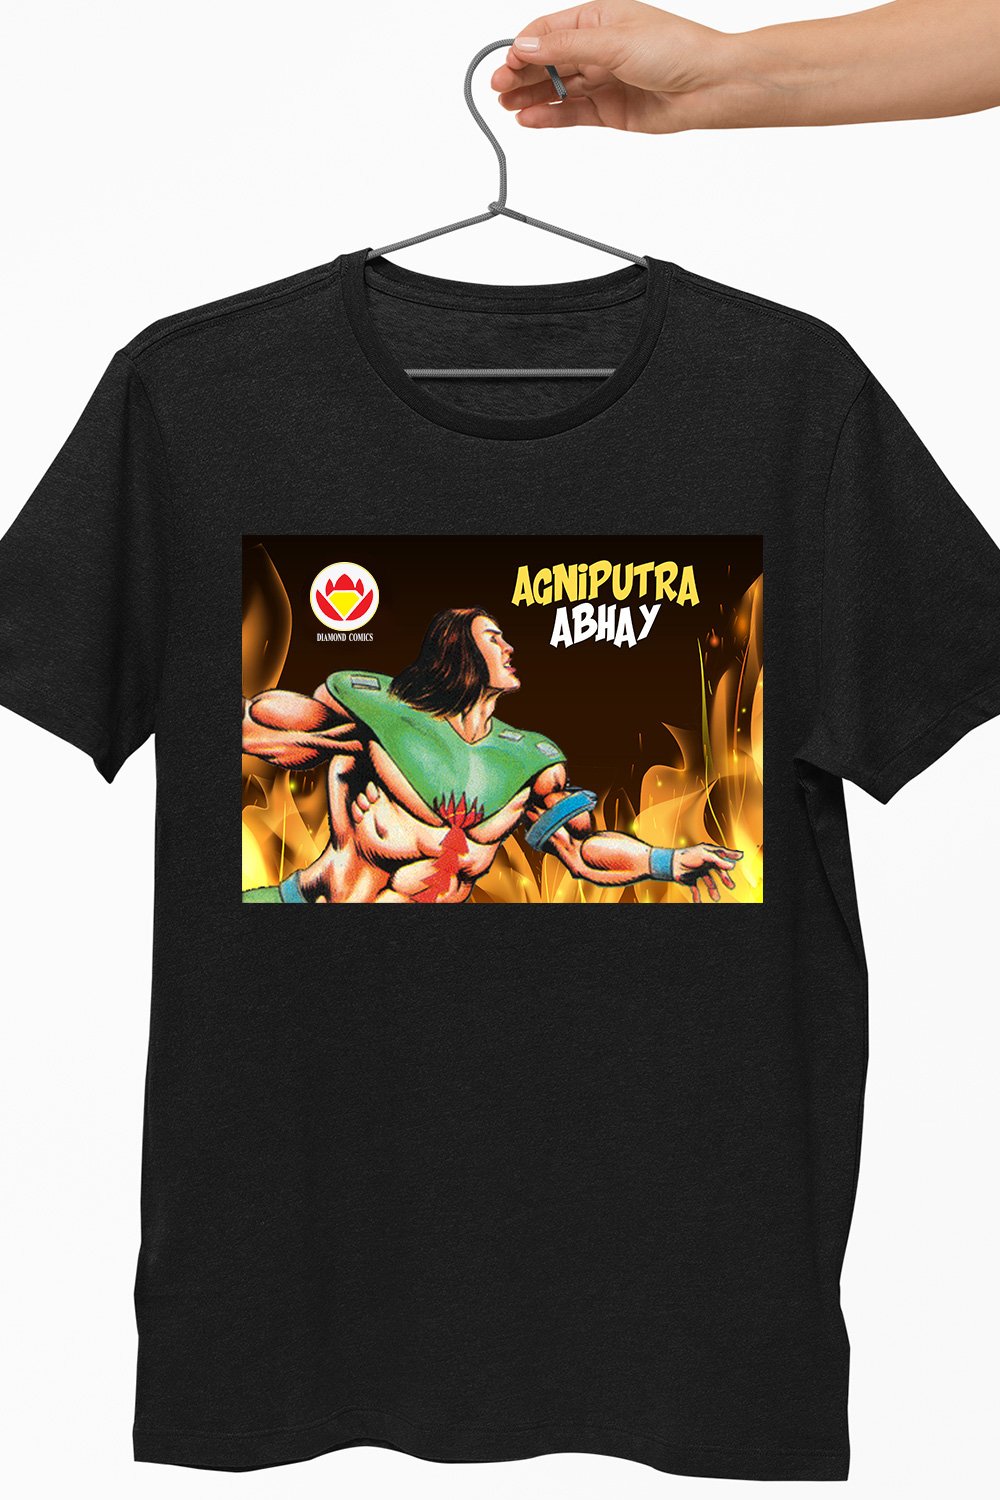 Agniputra Abhay Black Tshirt